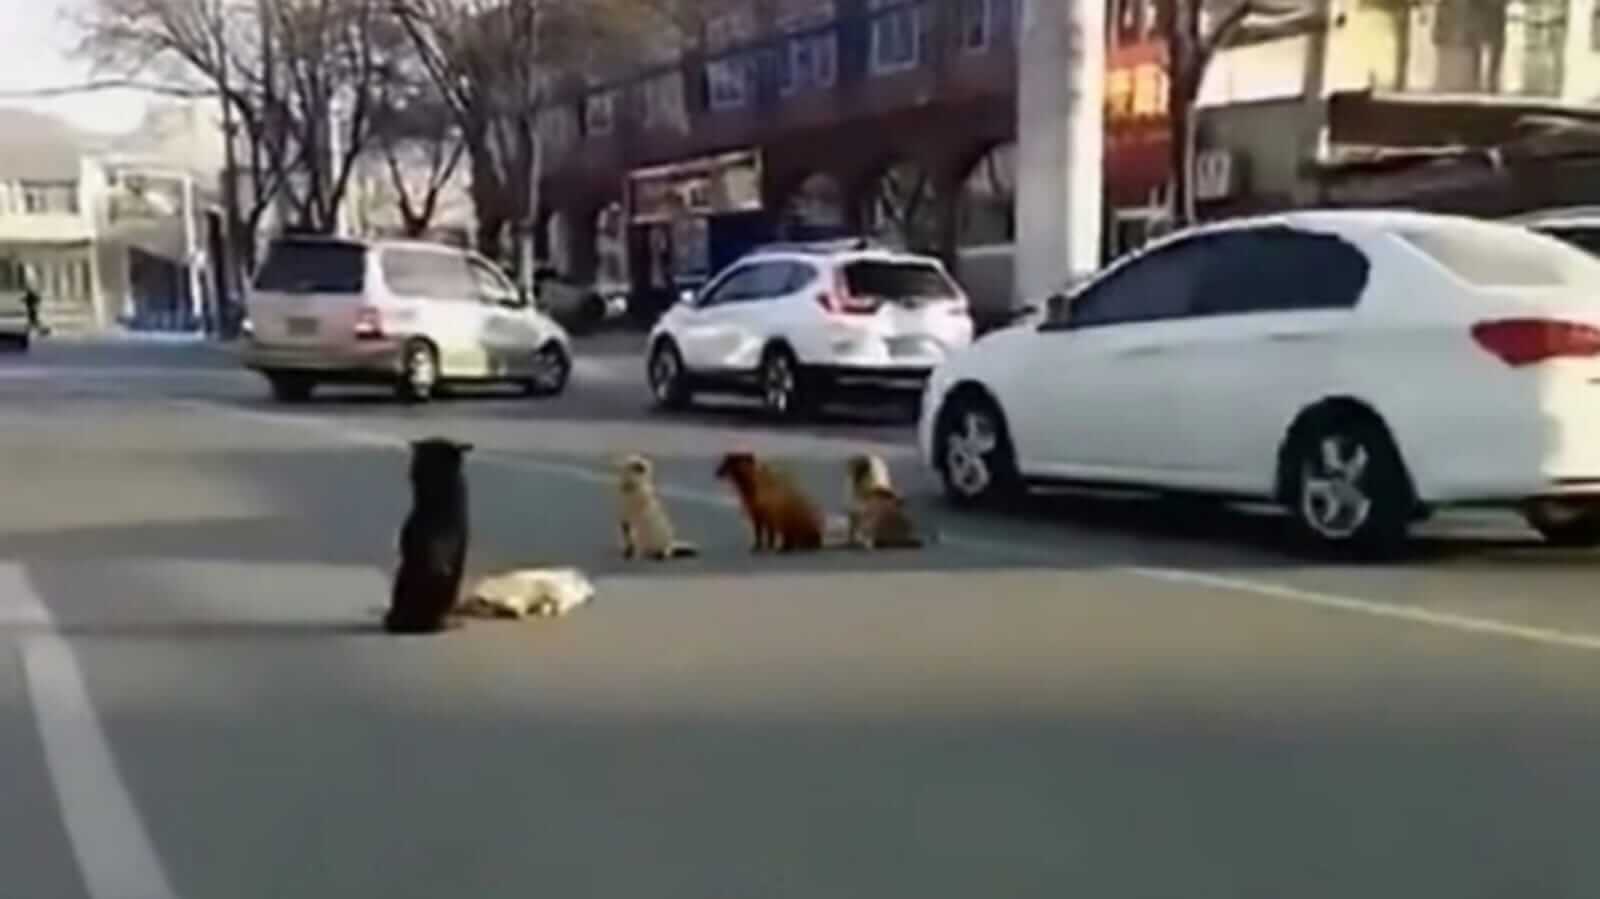 Cachorros no meio da rua